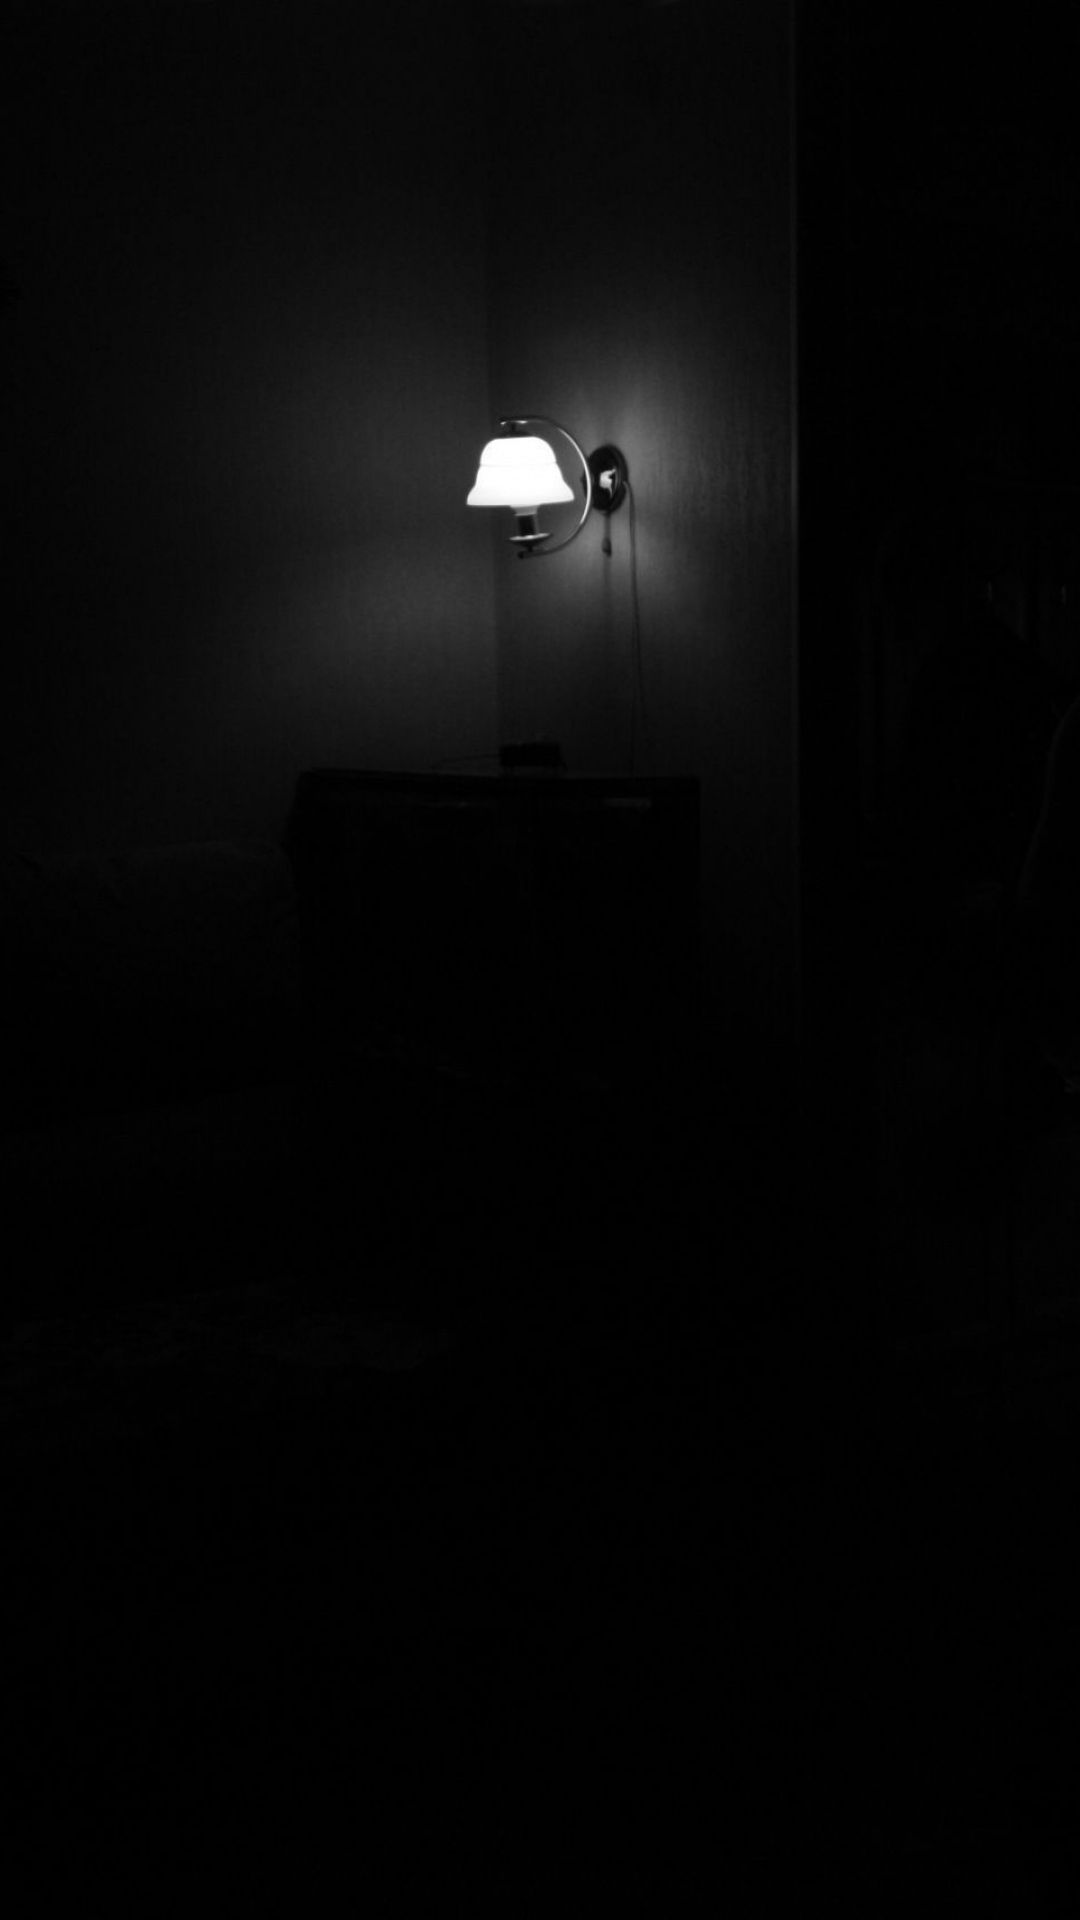 Dark-android-wallpaper-1080X1920-dark-room-light.jpg